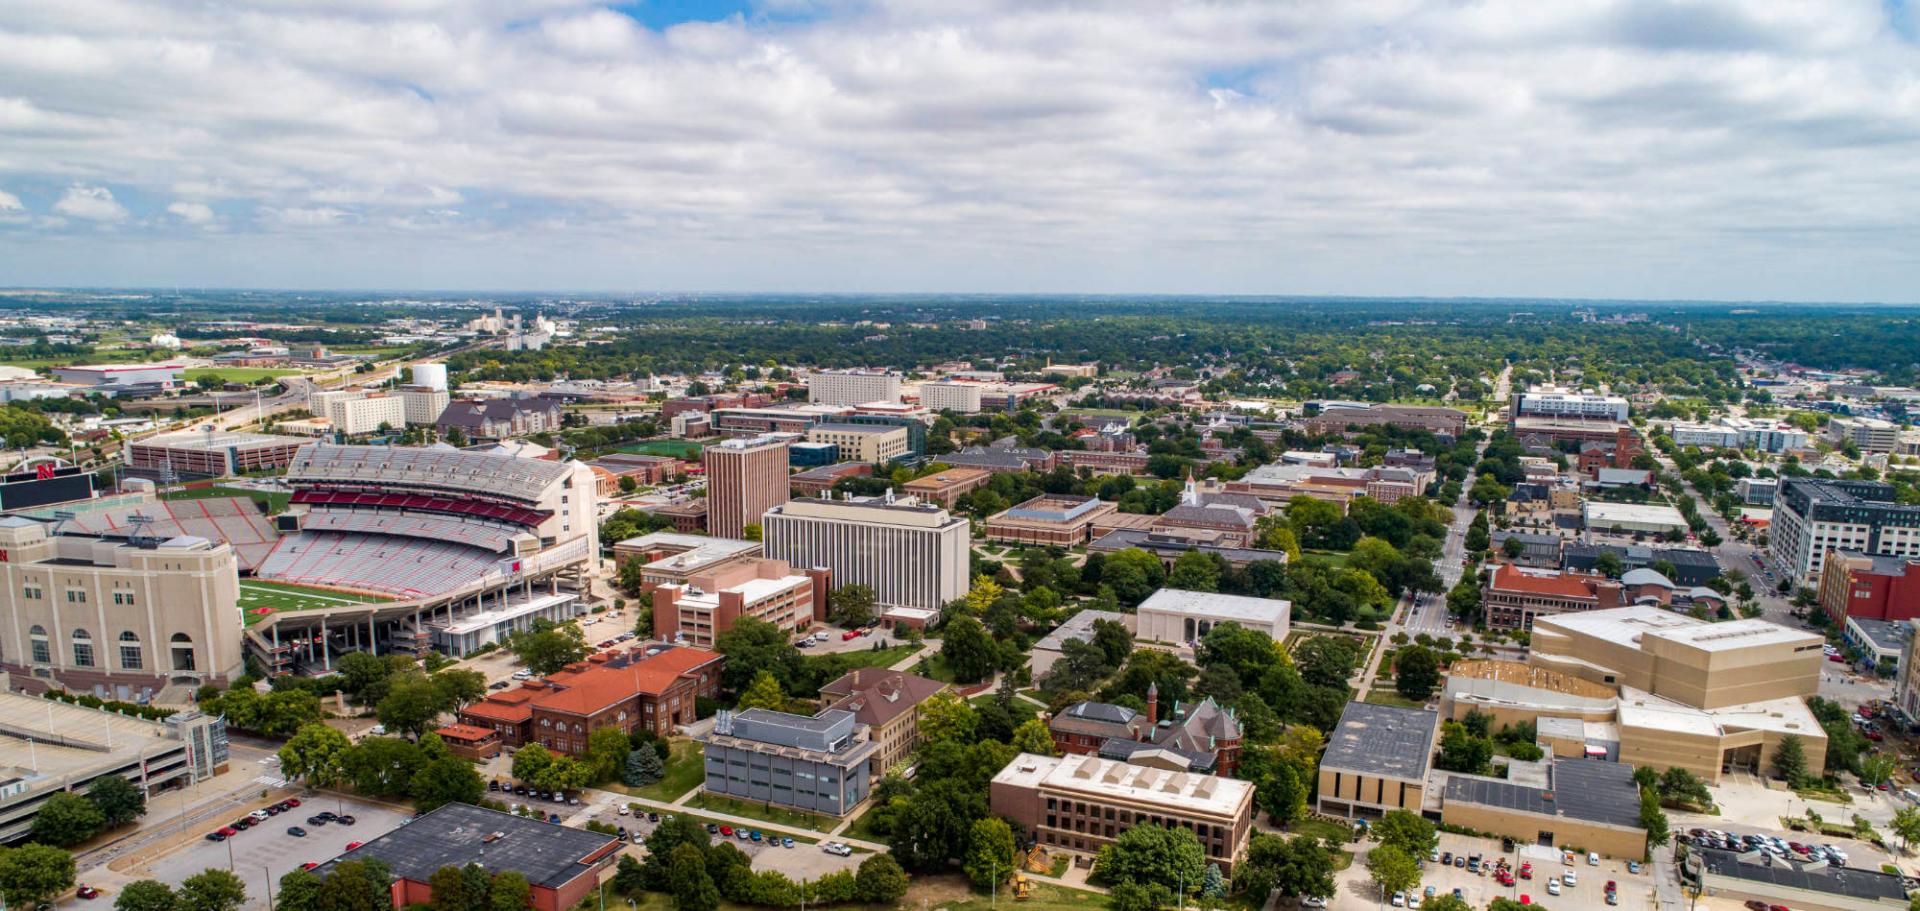 Aerial photo of city campus with stadium